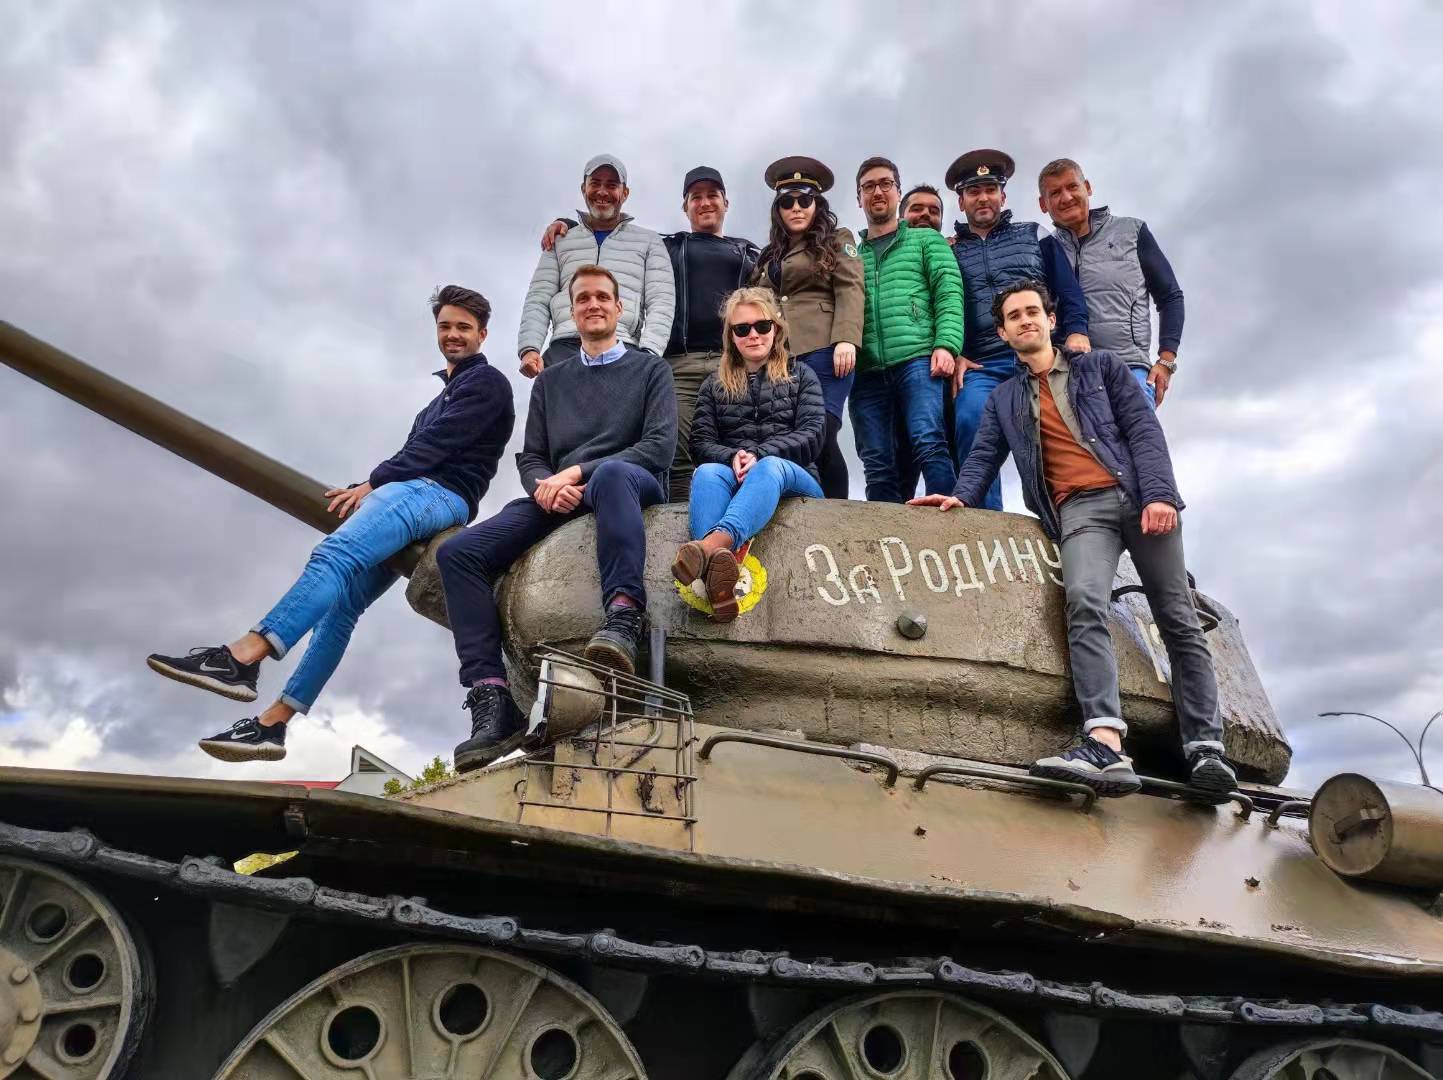 Soviet tank, Transnistria tours, tours to Transnistria 